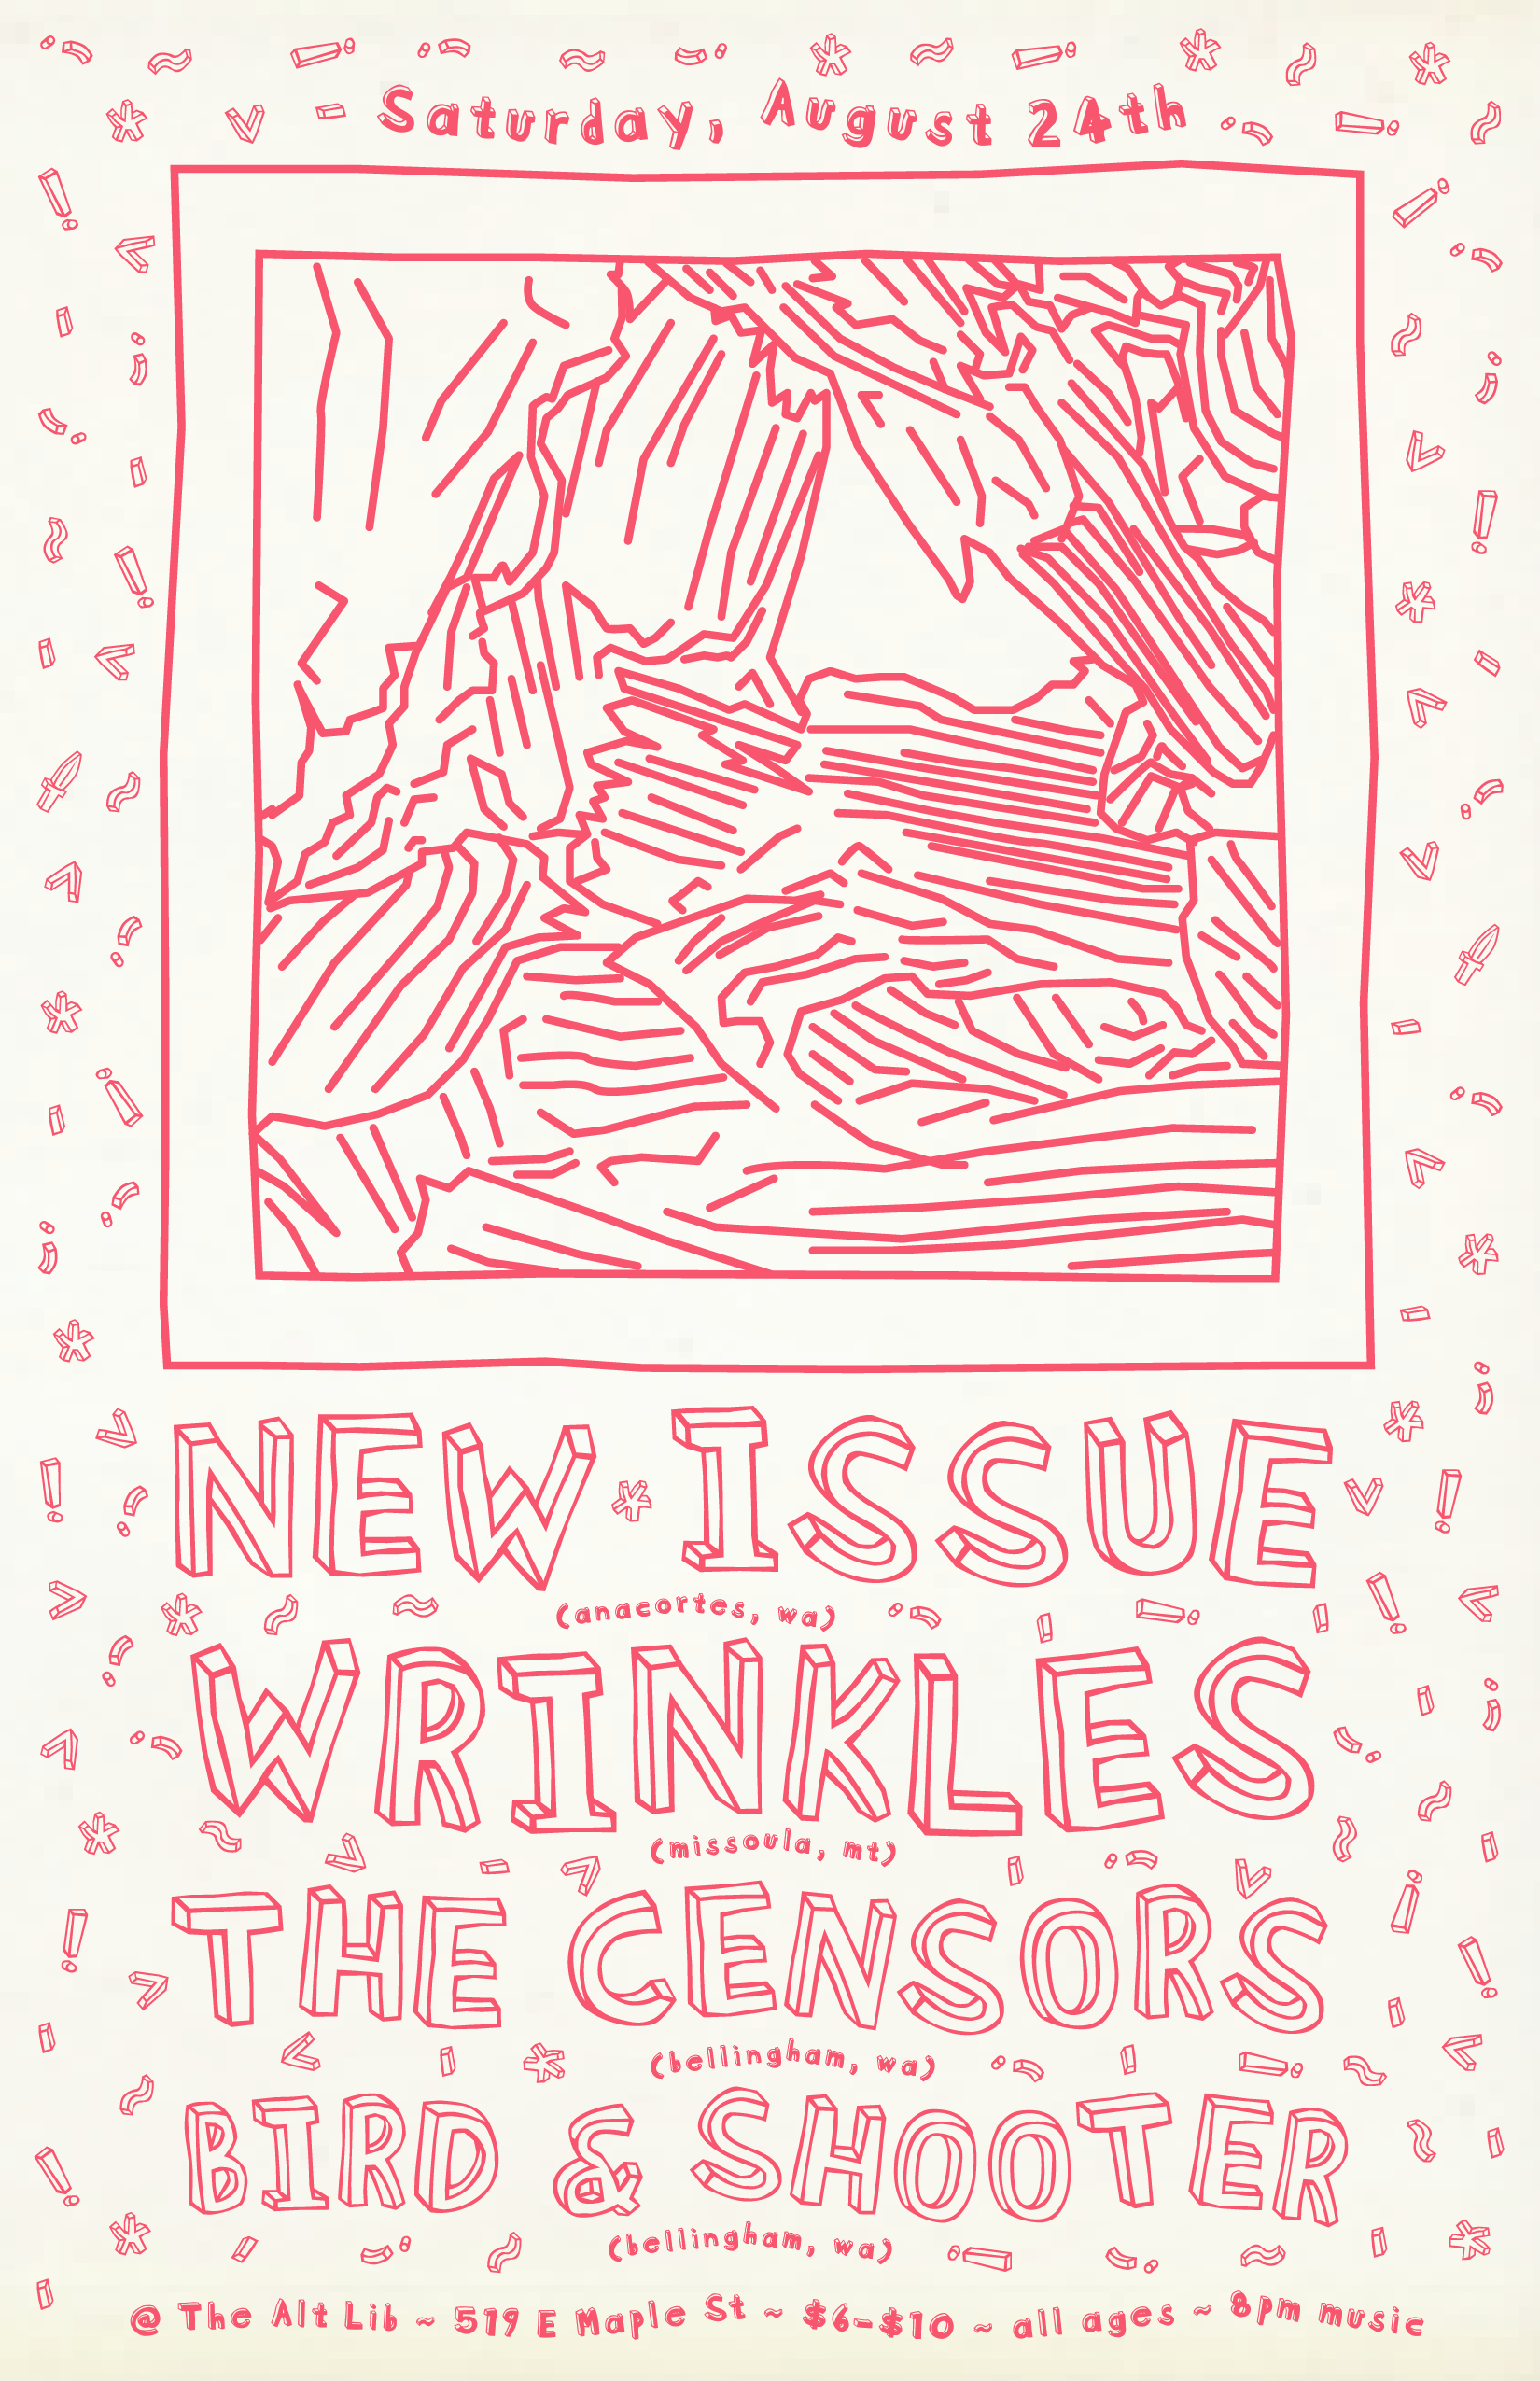 New Issue, Wrinkles, The Censors, Bird & Shooter - September 24 Show Flyer